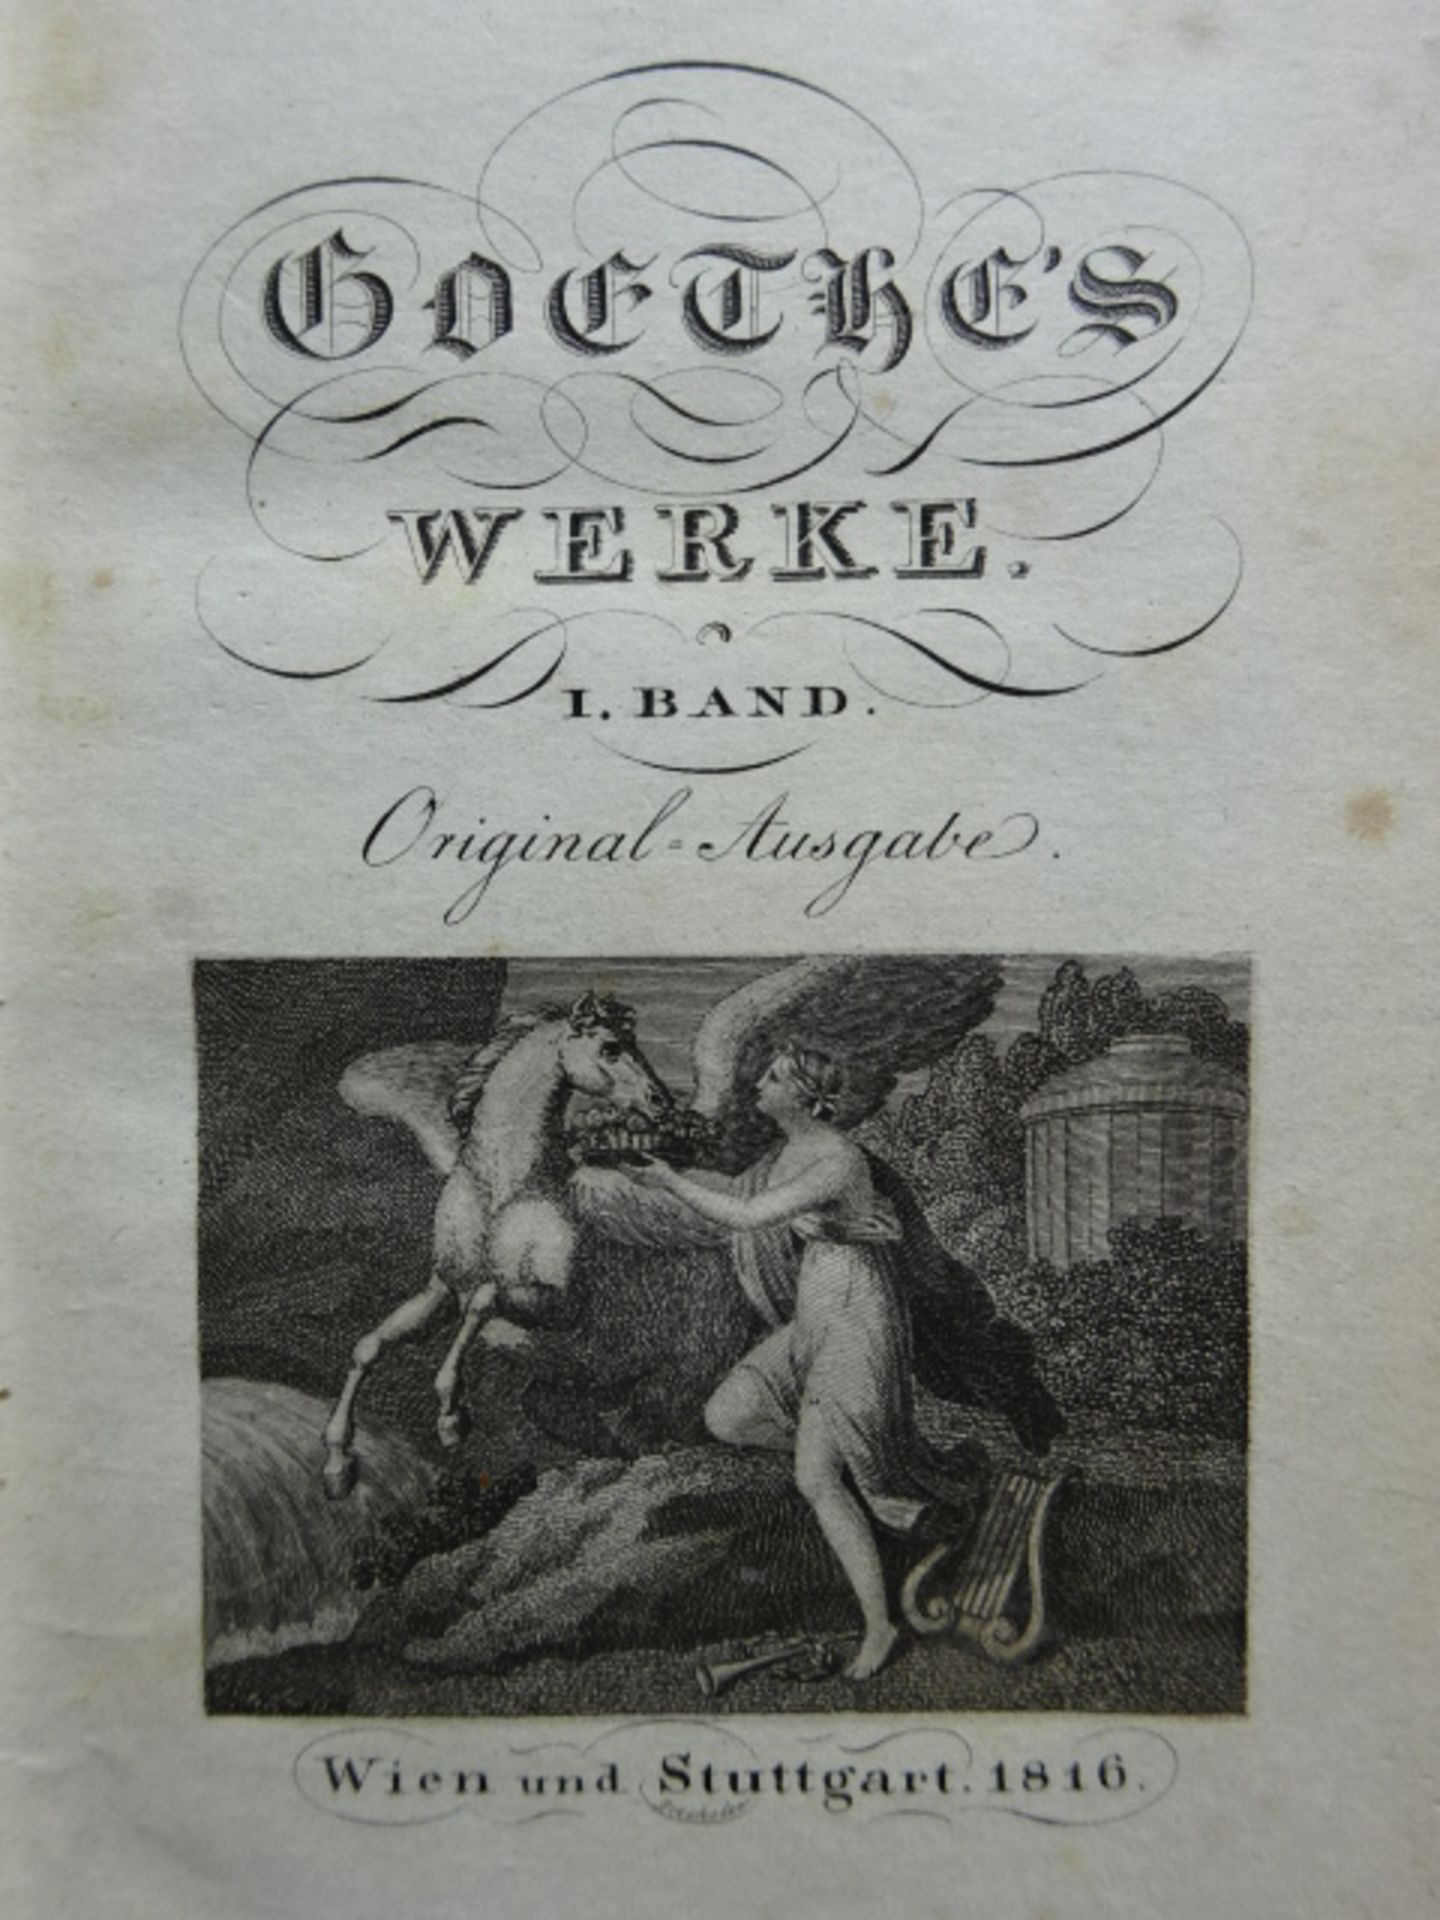 Goethe - Werke 26 Bde.